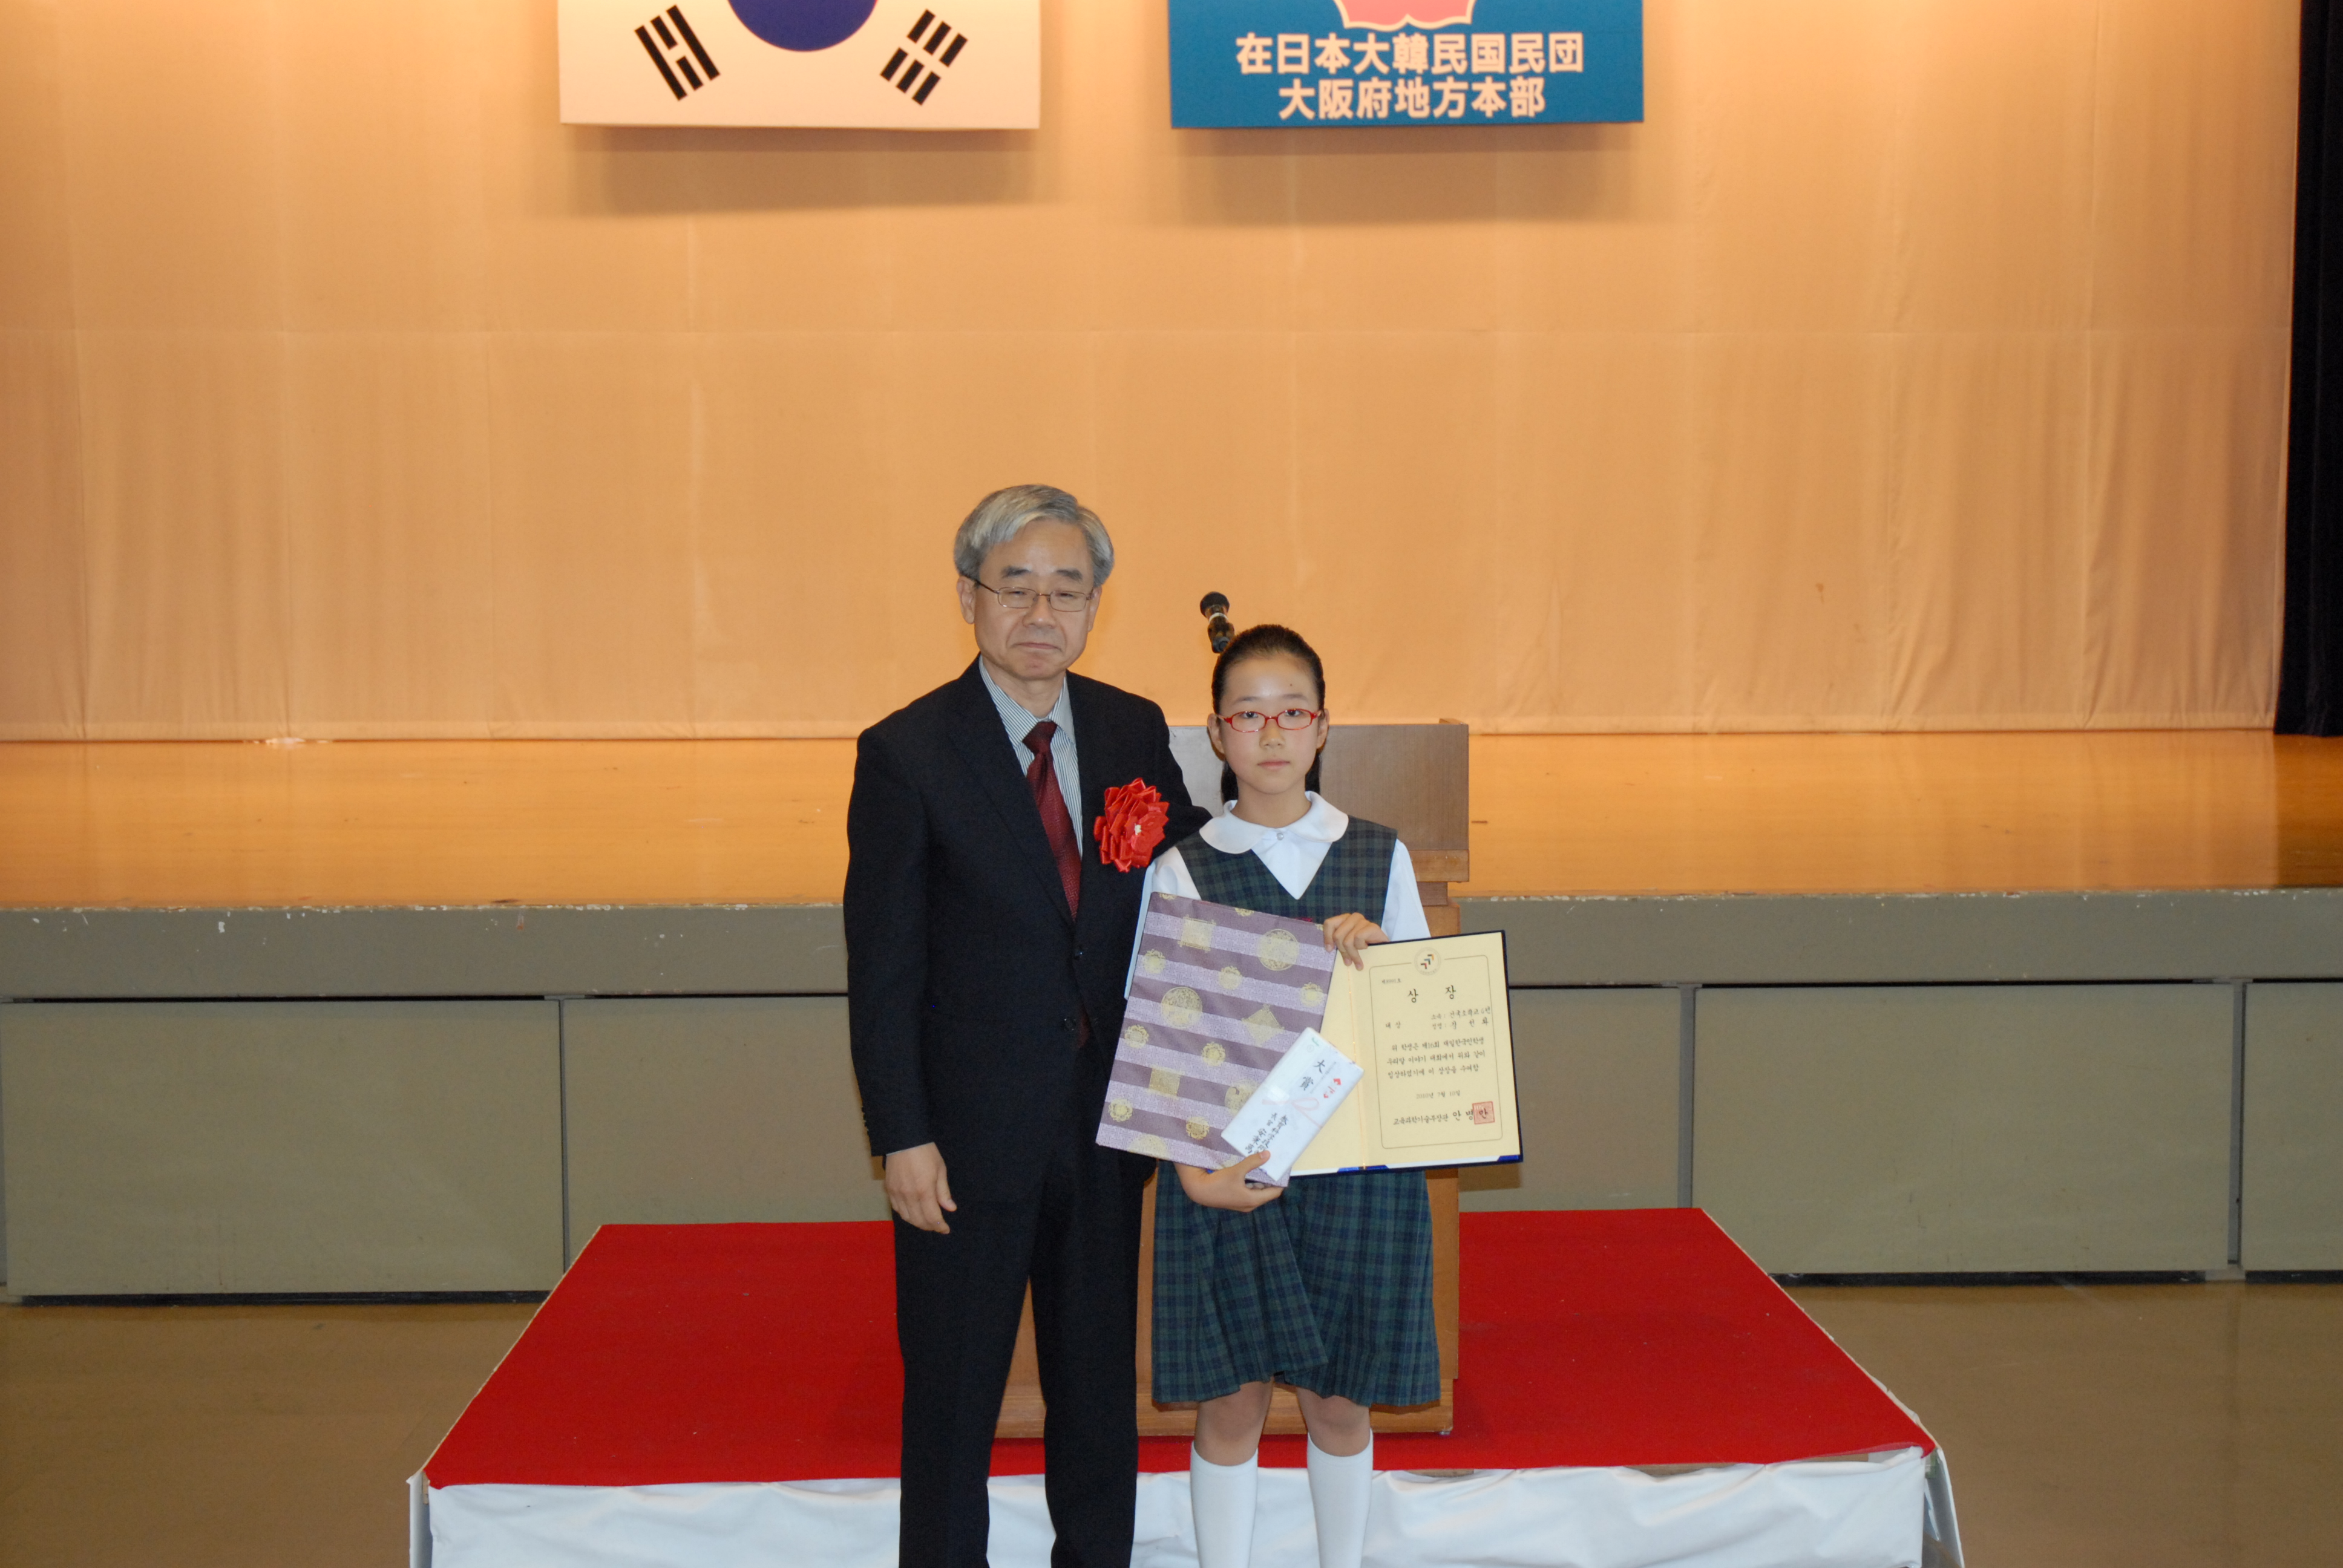 建国小学校6年 姜鮮華さんに駐日本大韓民国大使館の�｢優昌首席教育官から大賞が授与された。